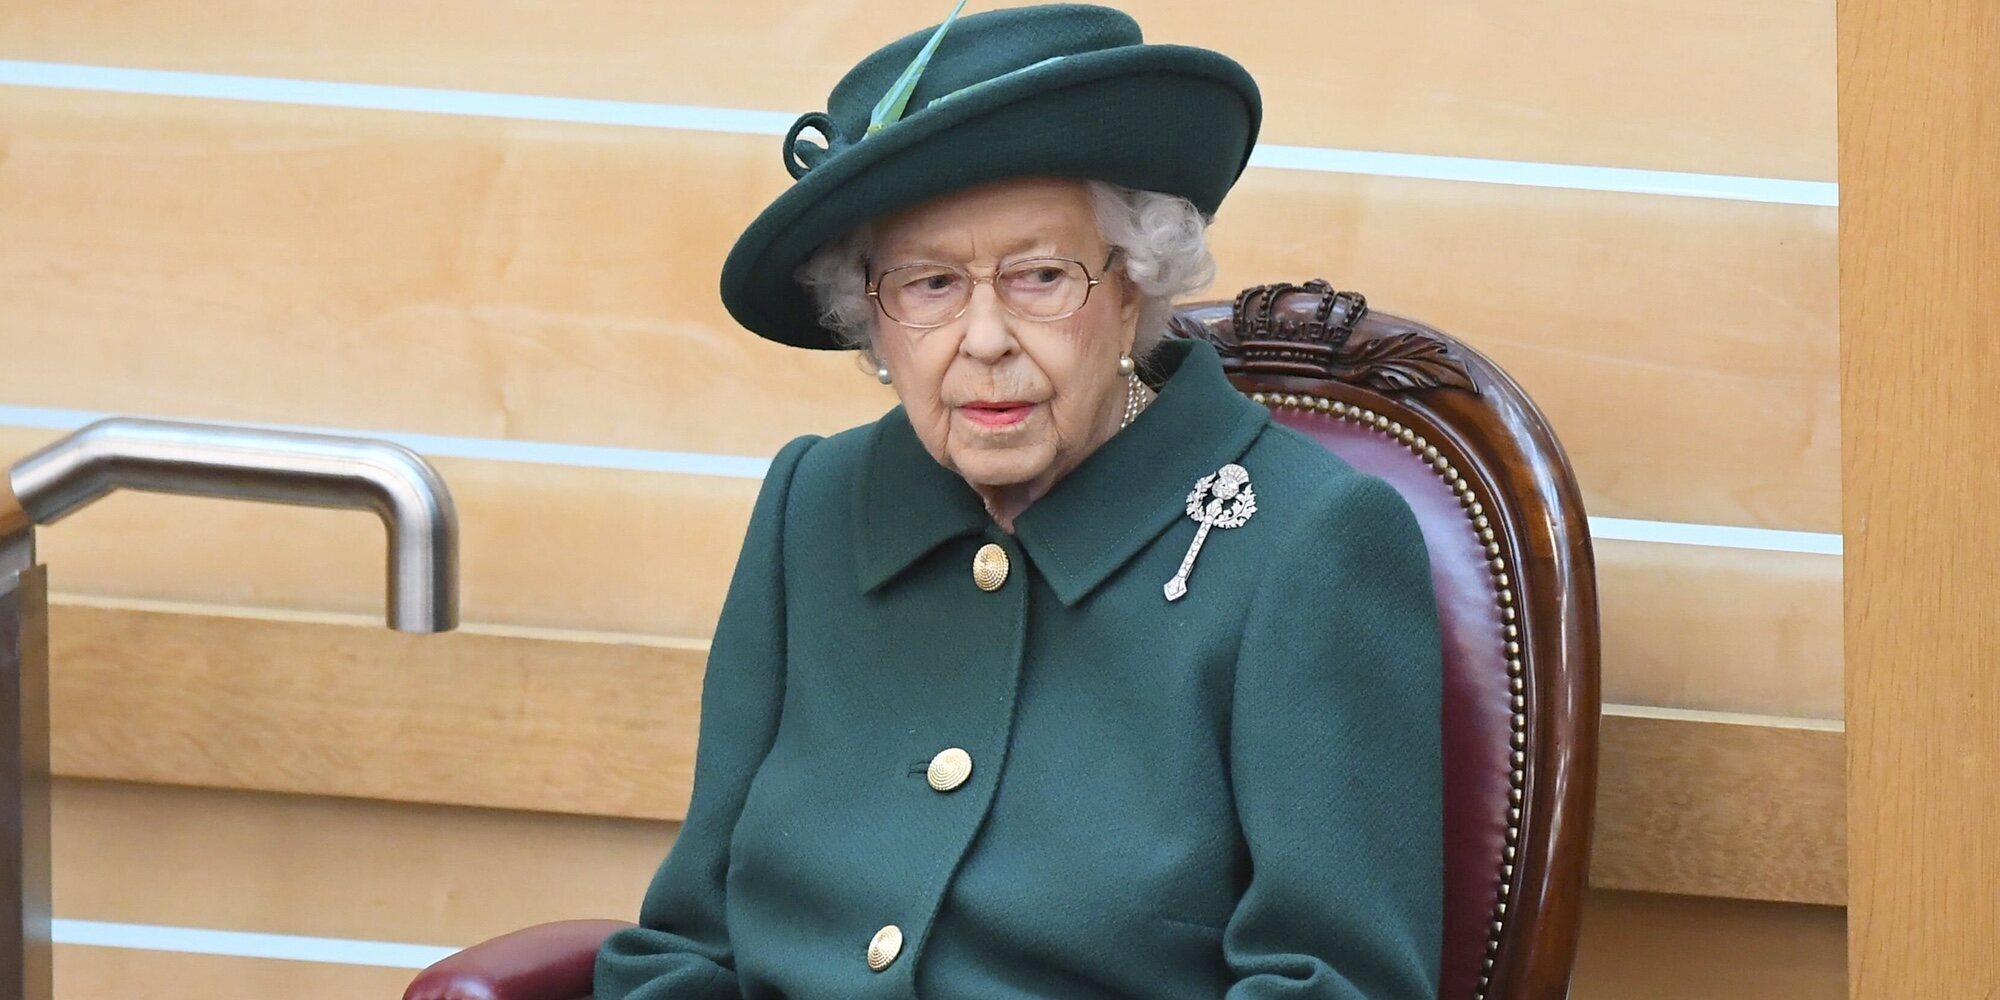 La Reina Isabel cancela su viaje a Irlanda del Norte por consejo médico